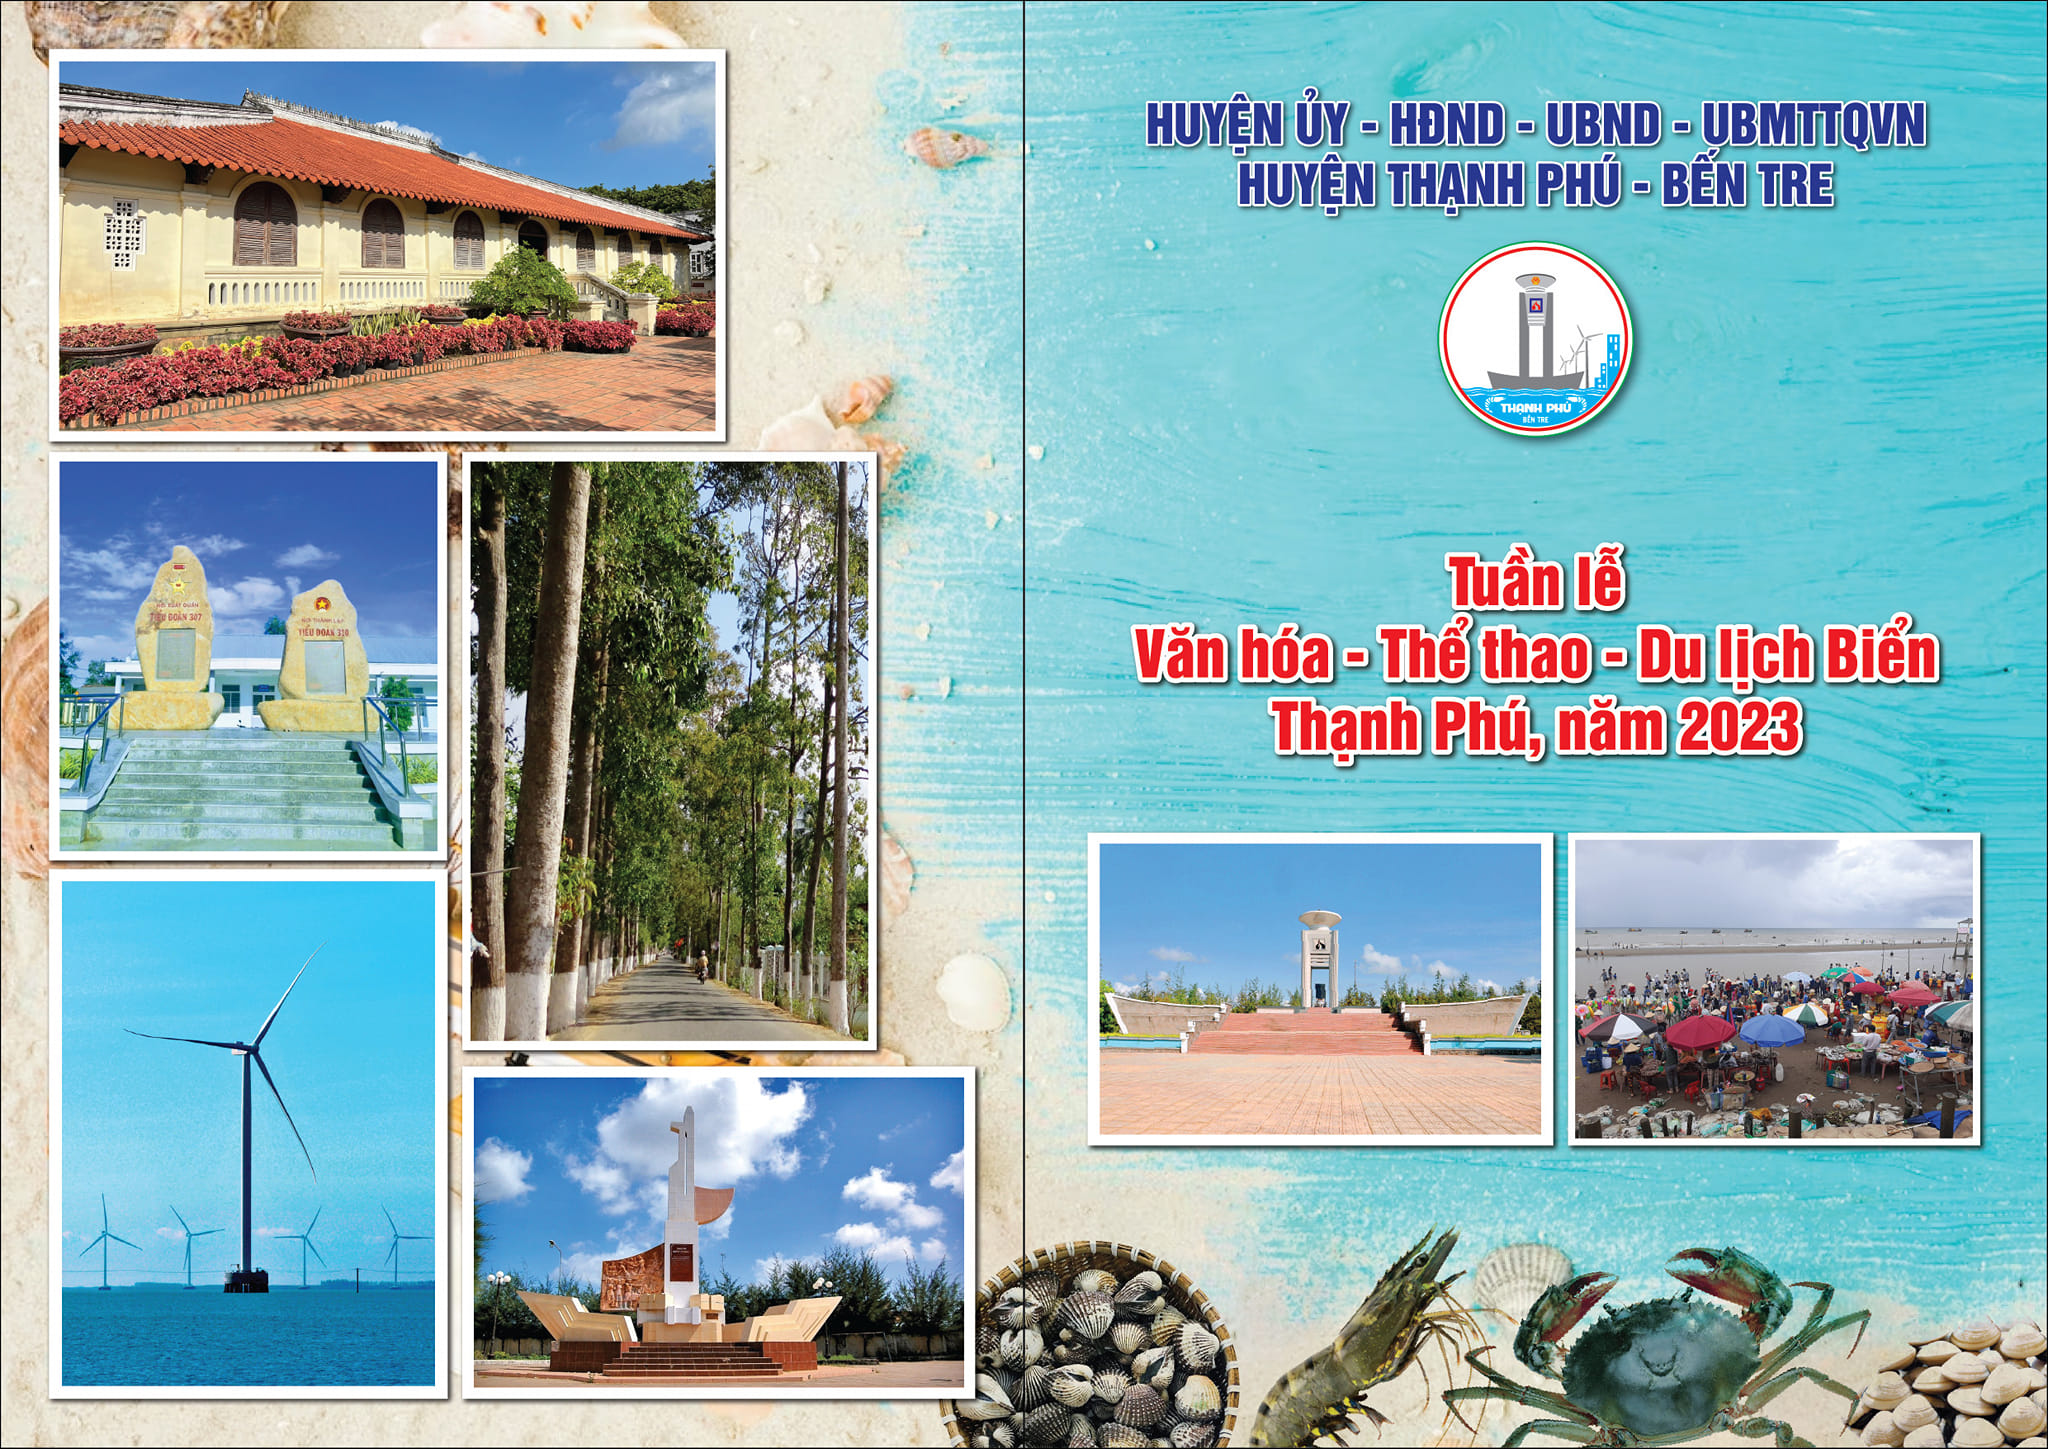 Thạnh Phú: sôi động Tuần lễ Văn hóa - Thể thao - Du lịch biển năm 2023